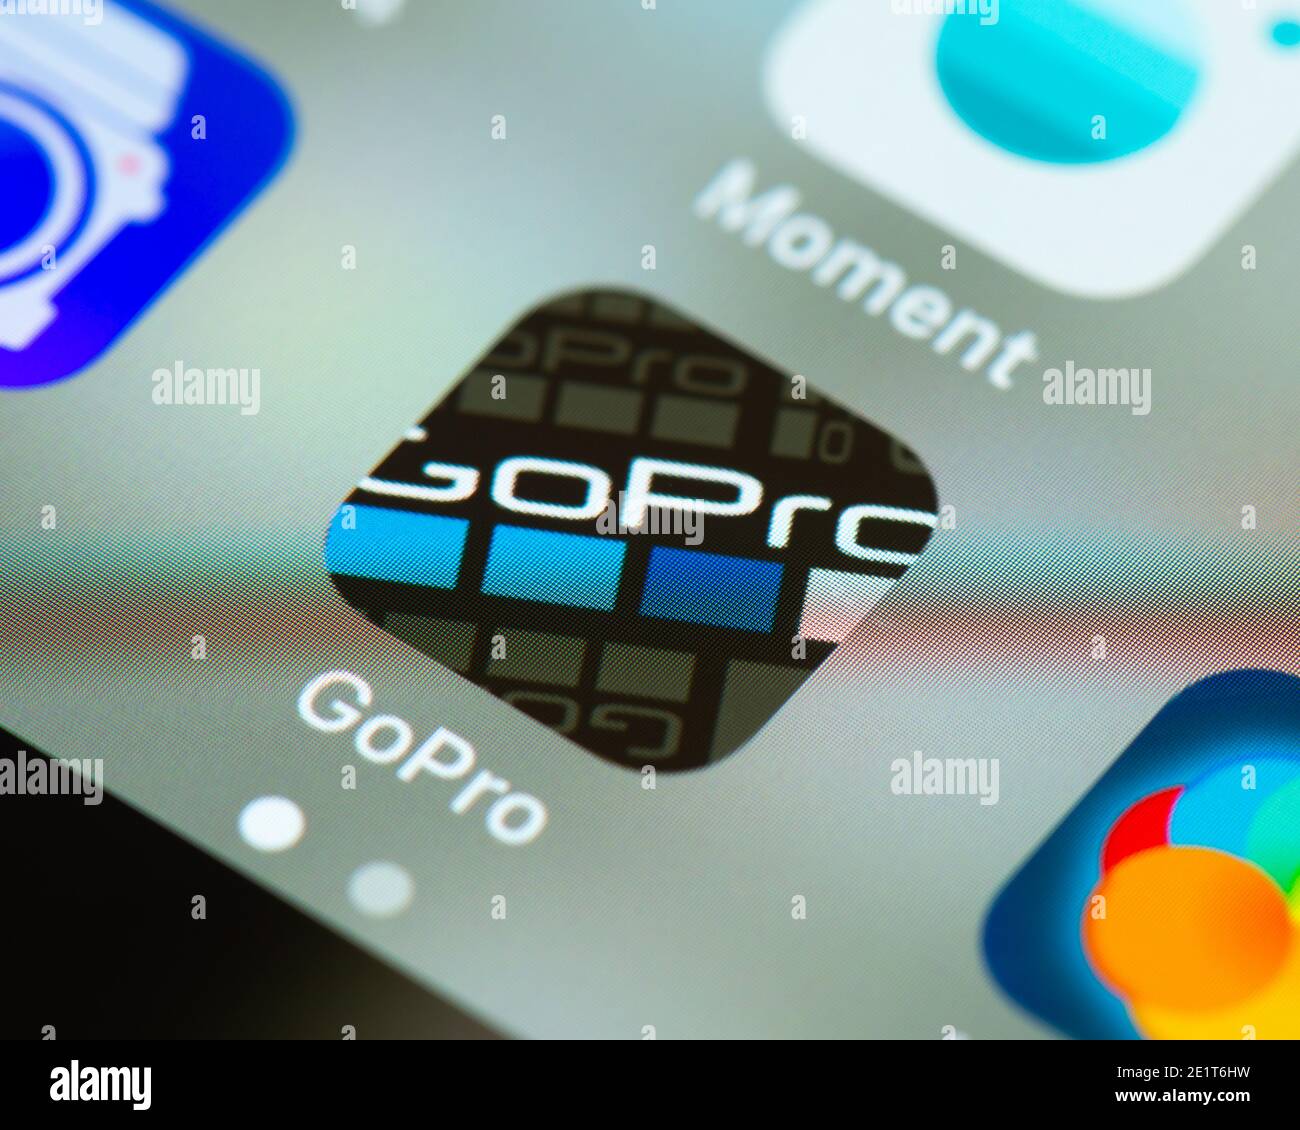 Icona GoPro App sullo schermo di Apple iPhone. La GoPro App ti consente di collegarti alla tua fotocamera GoPro e di modificare foto e video. Foto Stock